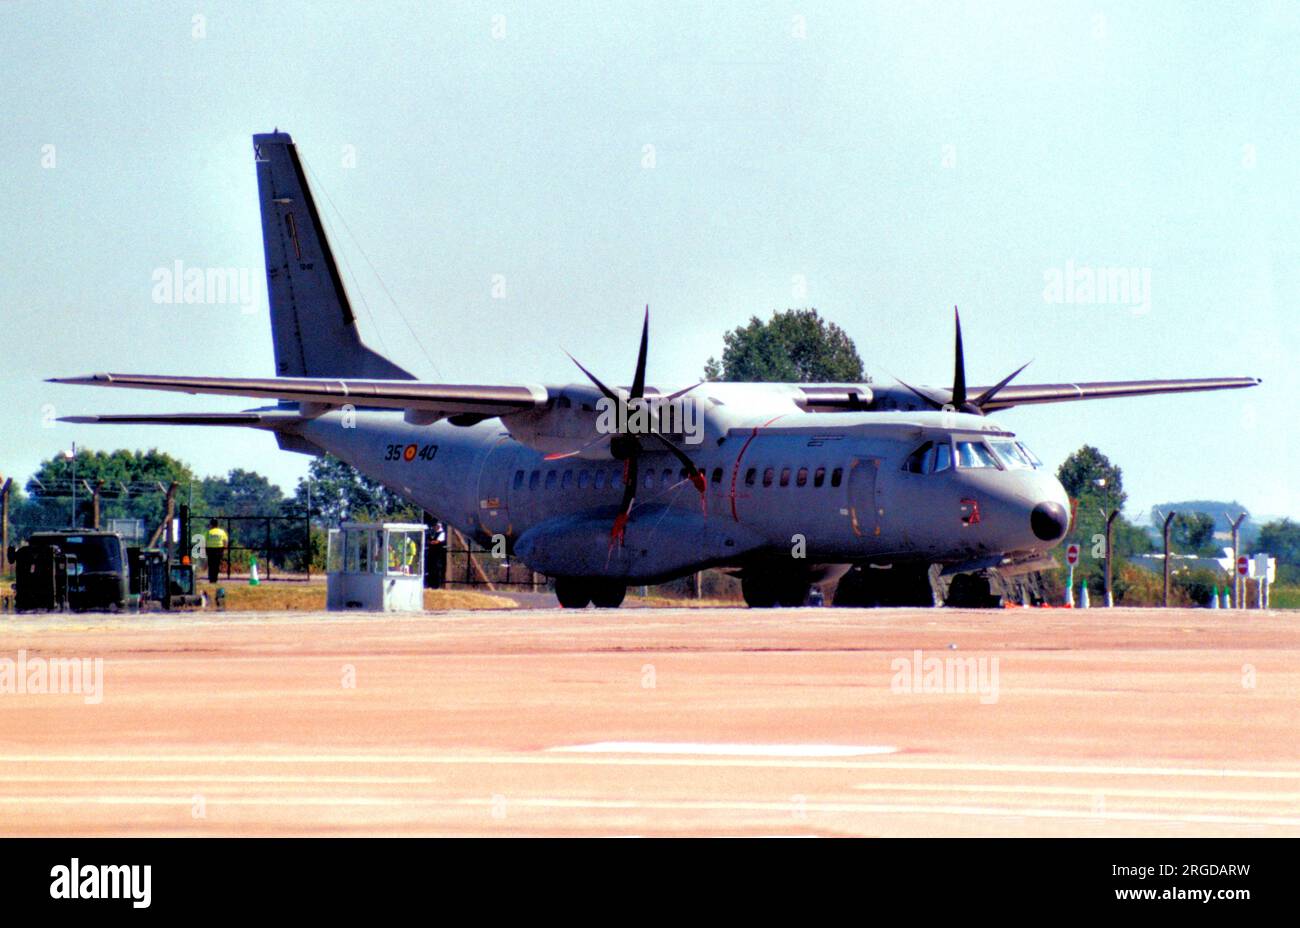 Ejercito del aire - CASA C-295M T.21-02 / 35-40 (msn EA03-02-003). (Ejercito del aire - Force aérienne espagnole)T21-04 Banque D'Images